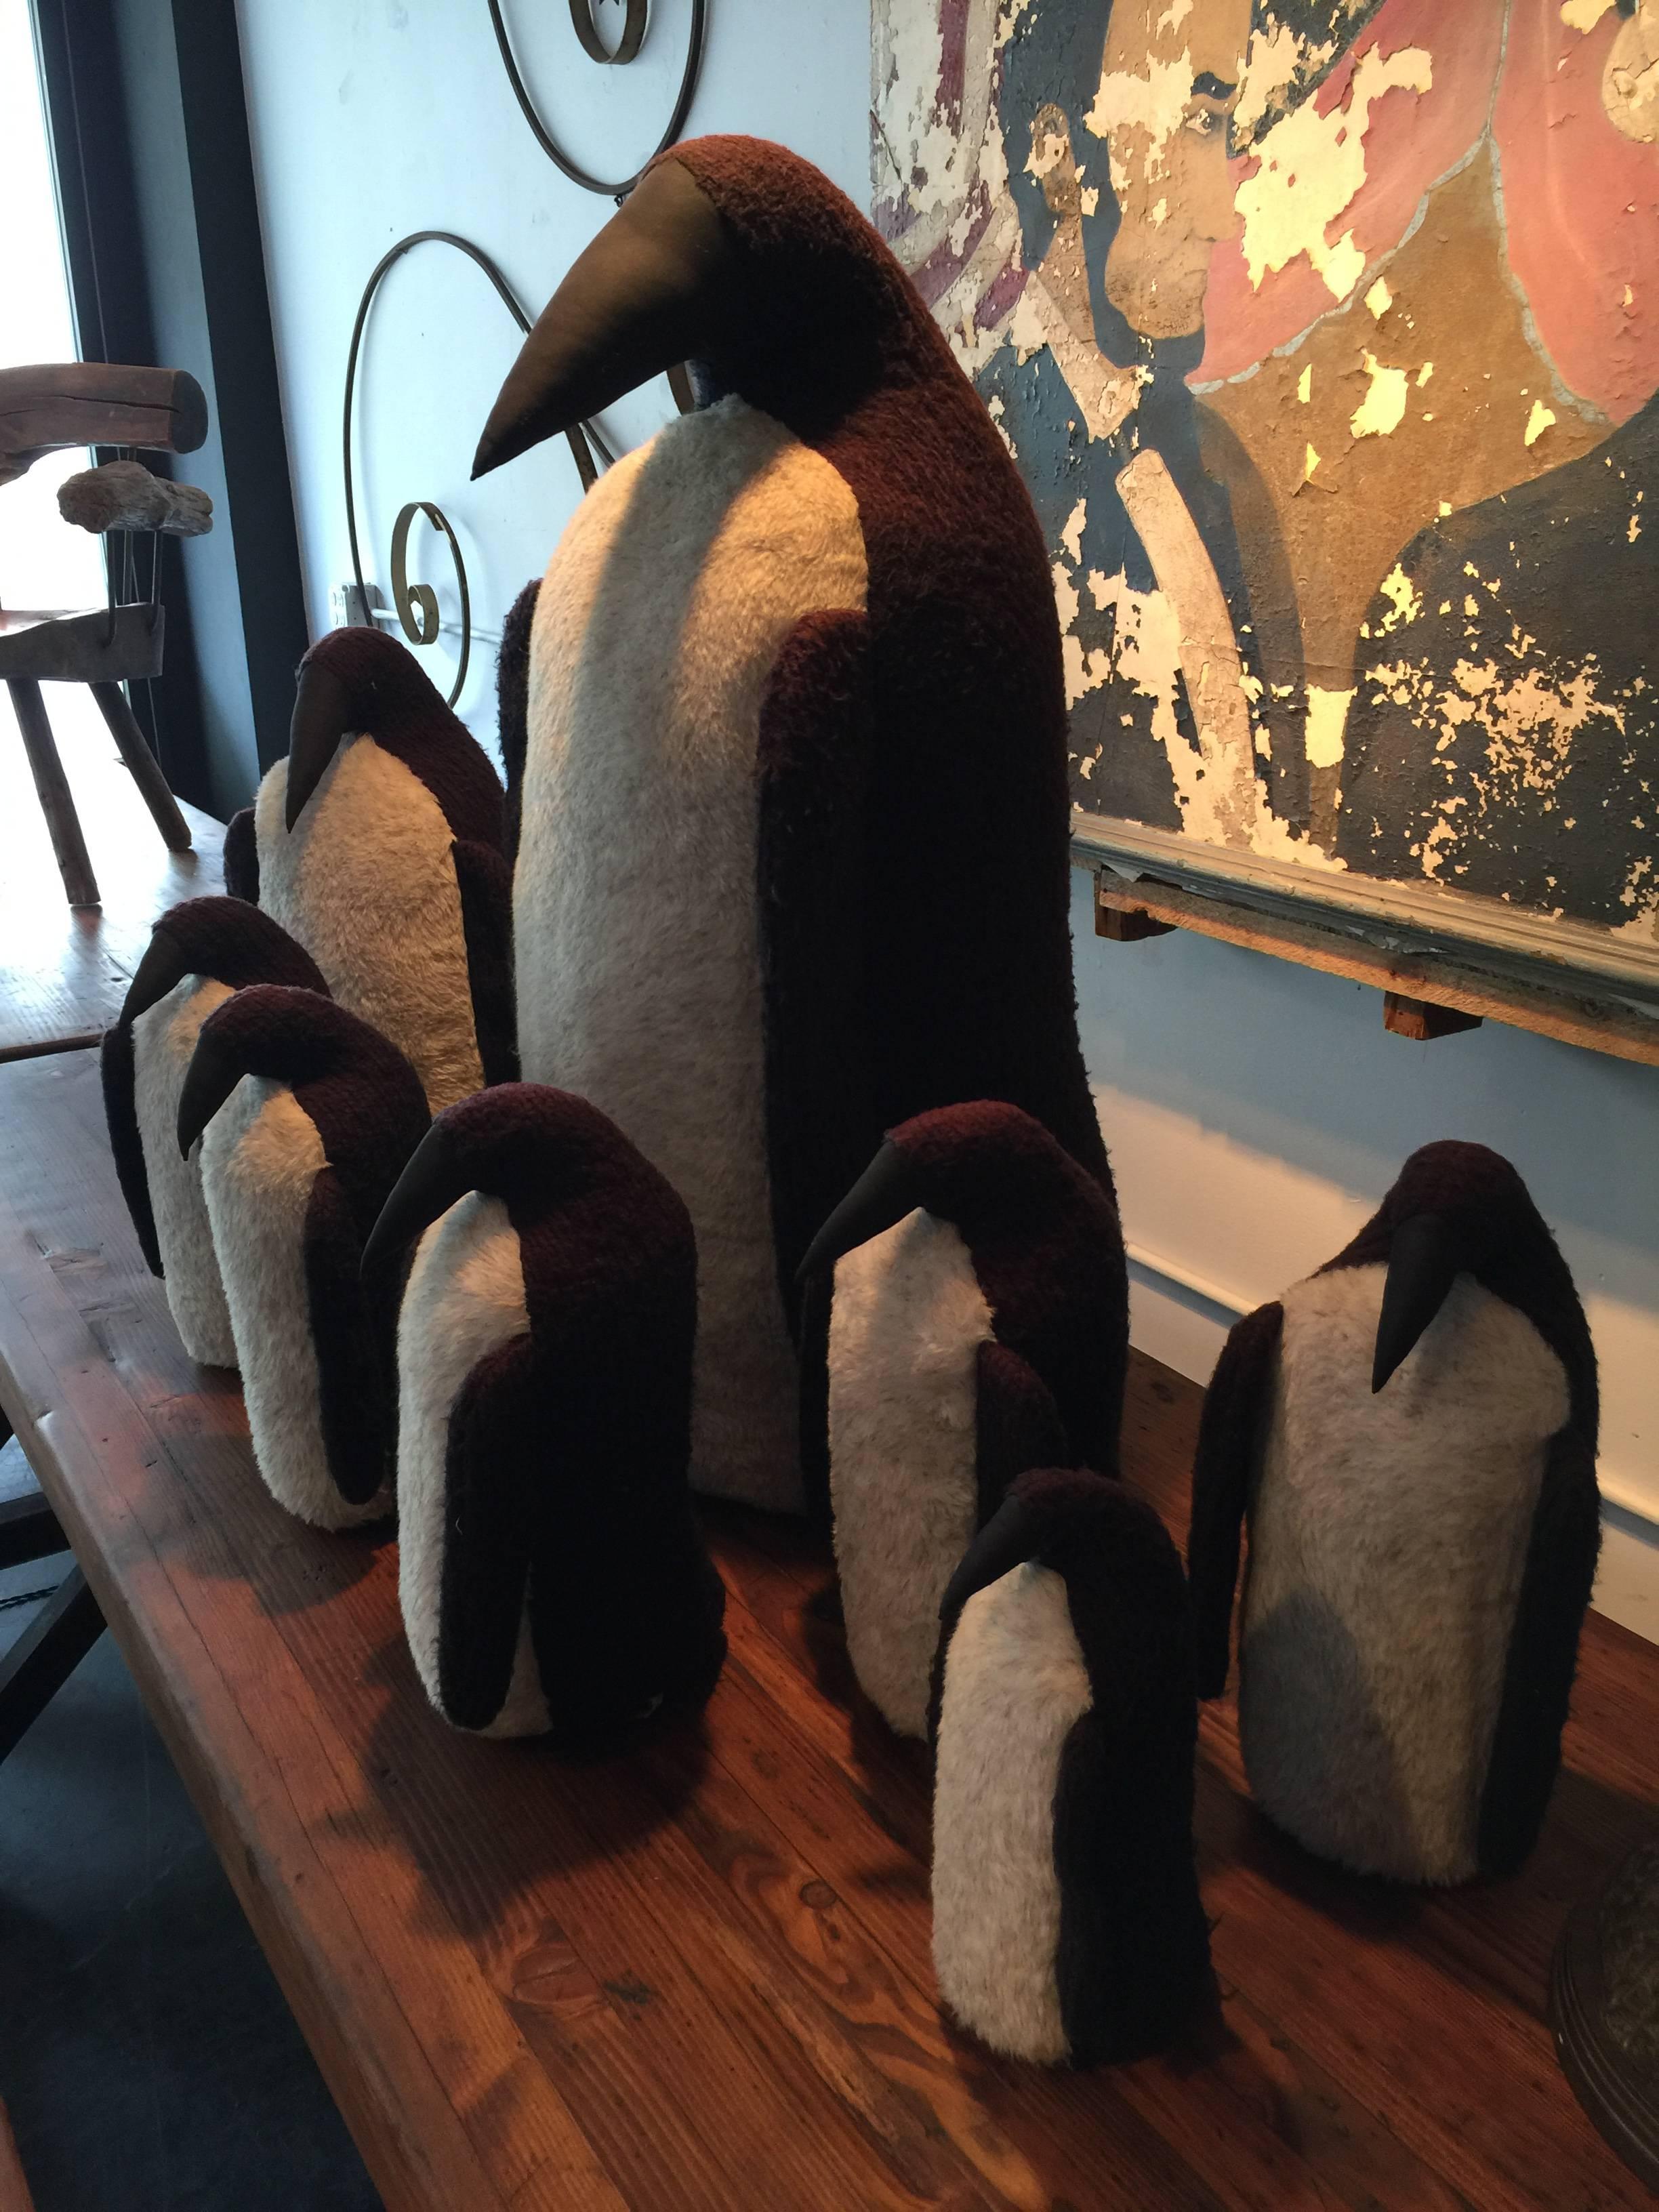 Troop of Penguins 1